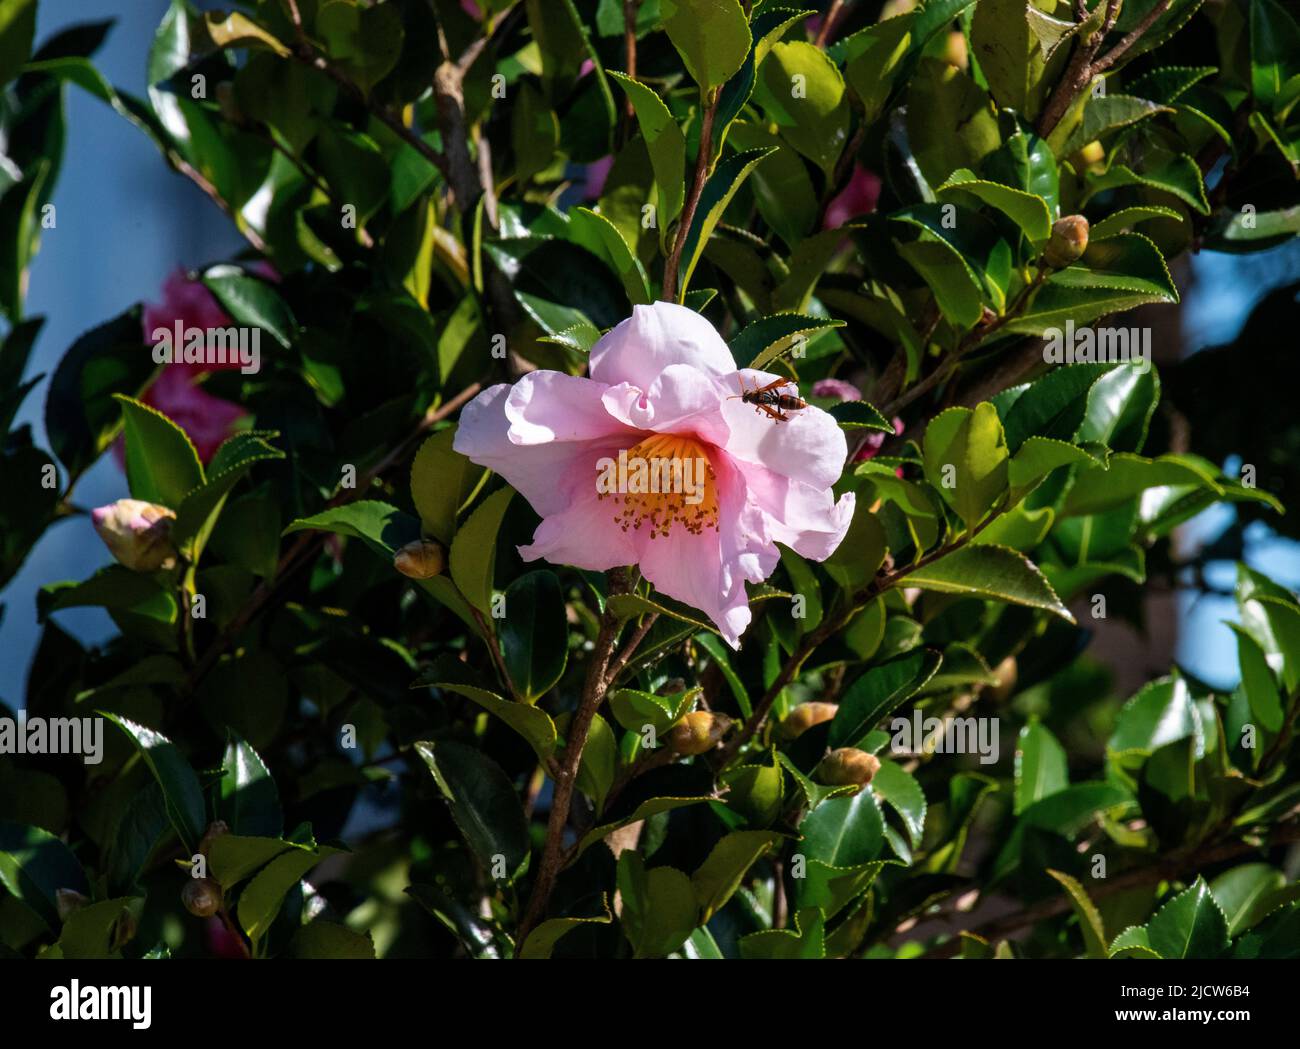 Un cornetto su un fiore Camellia X williamsii (Camillia ibrida) a Sydney, nuovo Galles del Sud, Australia (Foto di Tara Chand Malhotra) Foto Stock